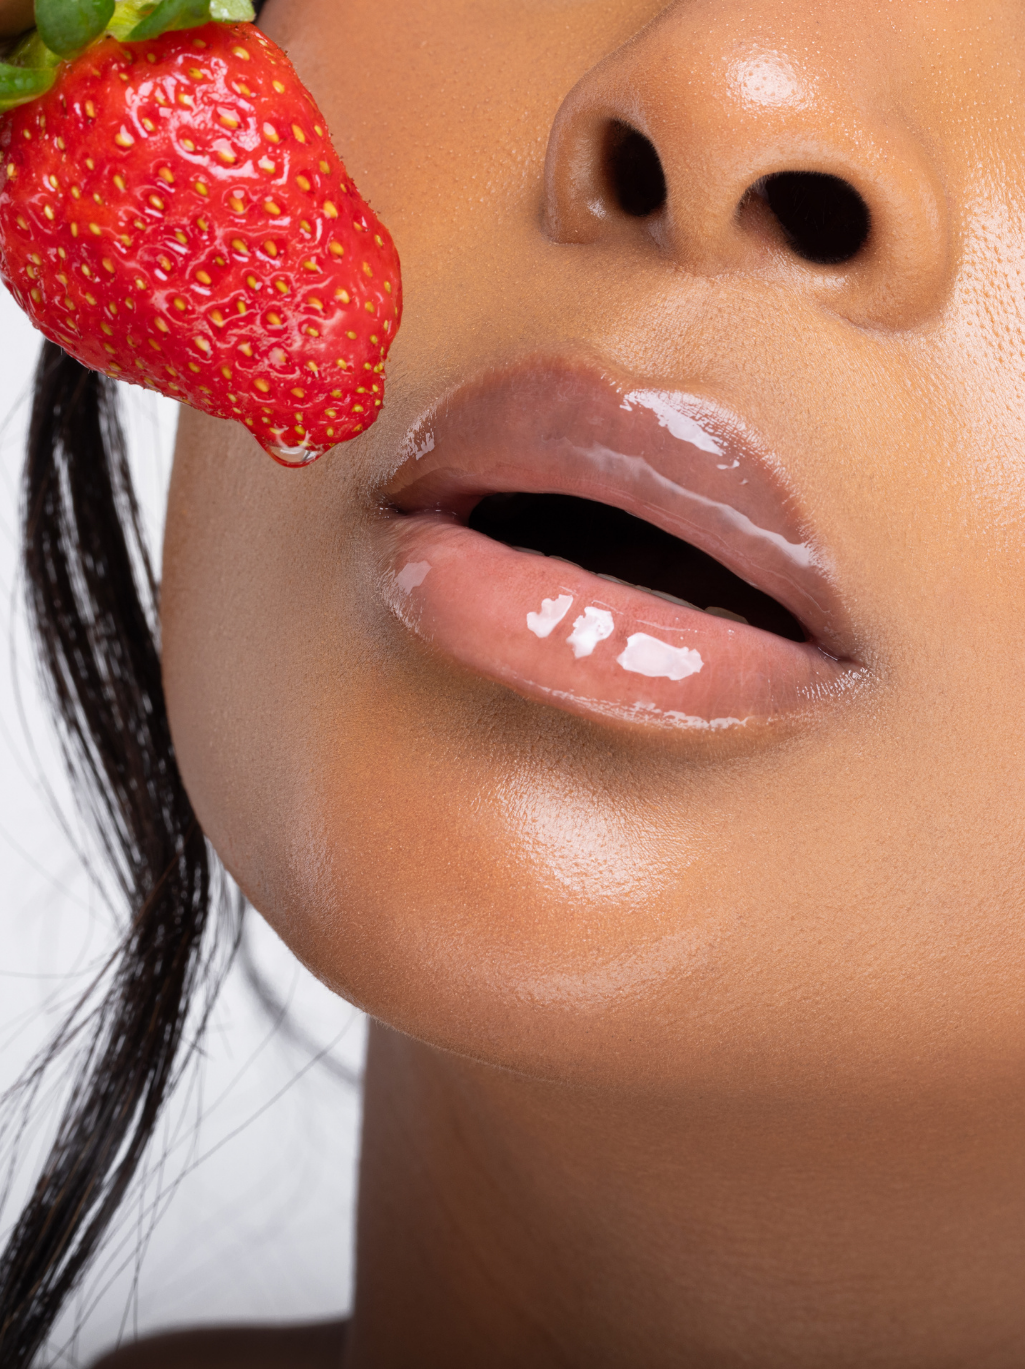 XOXO Pomegranate & Strawberry Lip Oil Duo